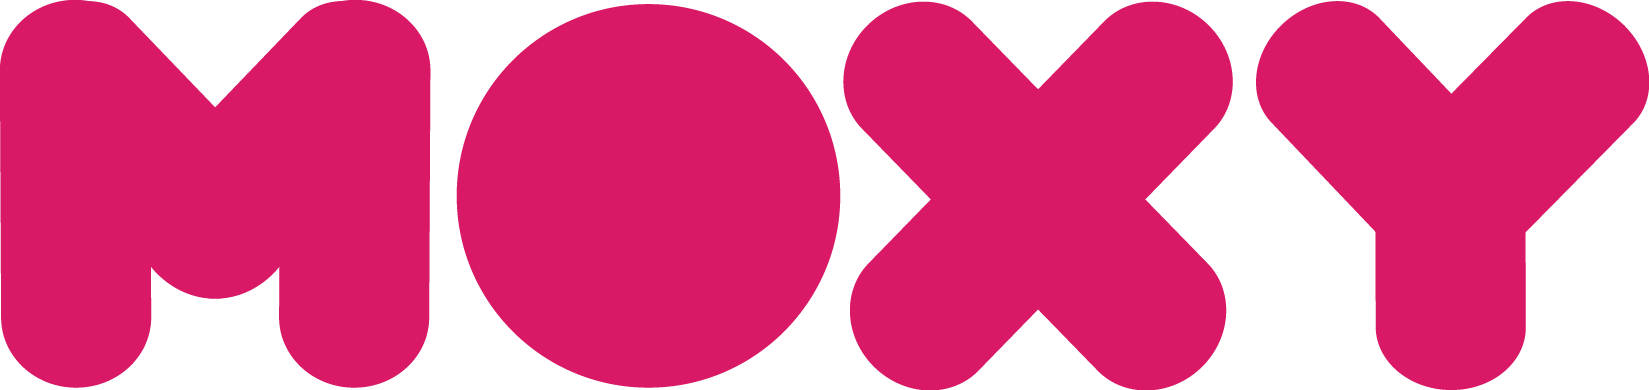 moxy-logo-cc.png